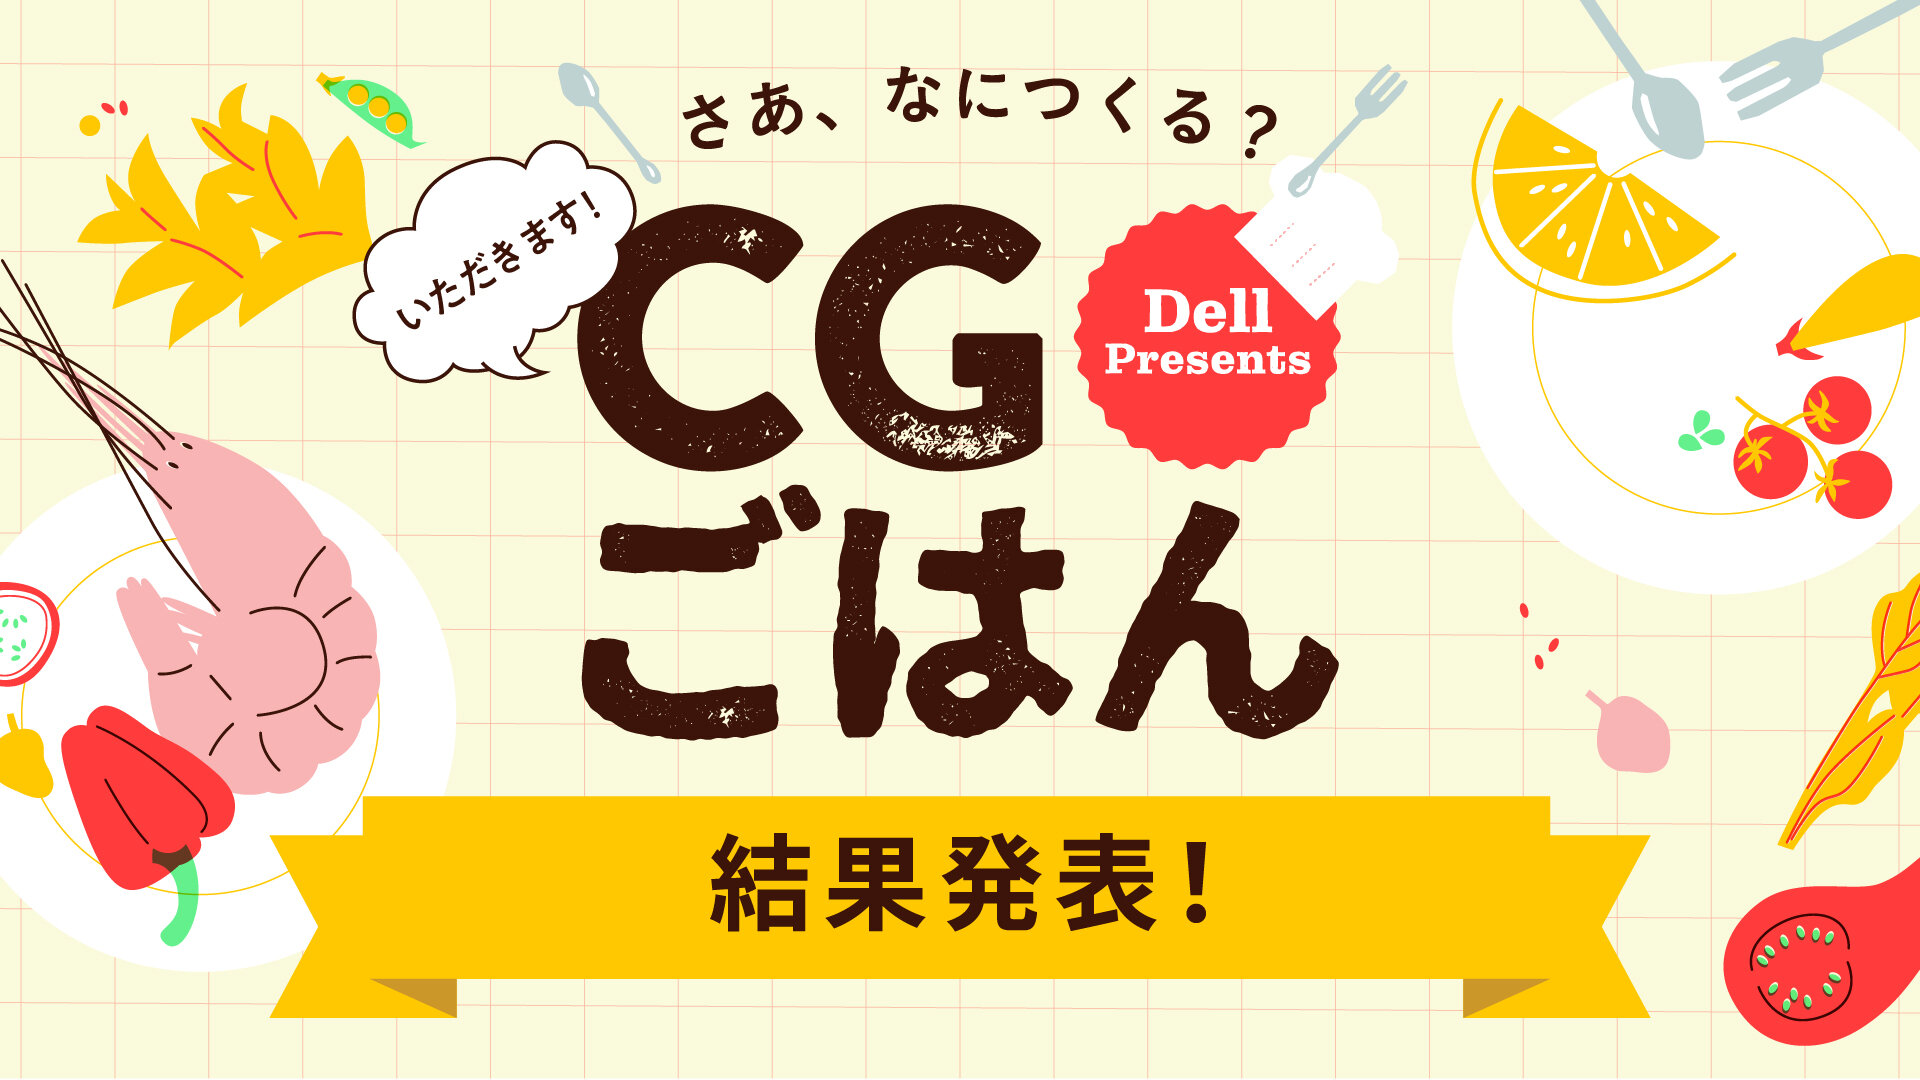 デル主催CGコンテスト第2回「CGごはん」 結果発表！ 優秀賞&審査員講評